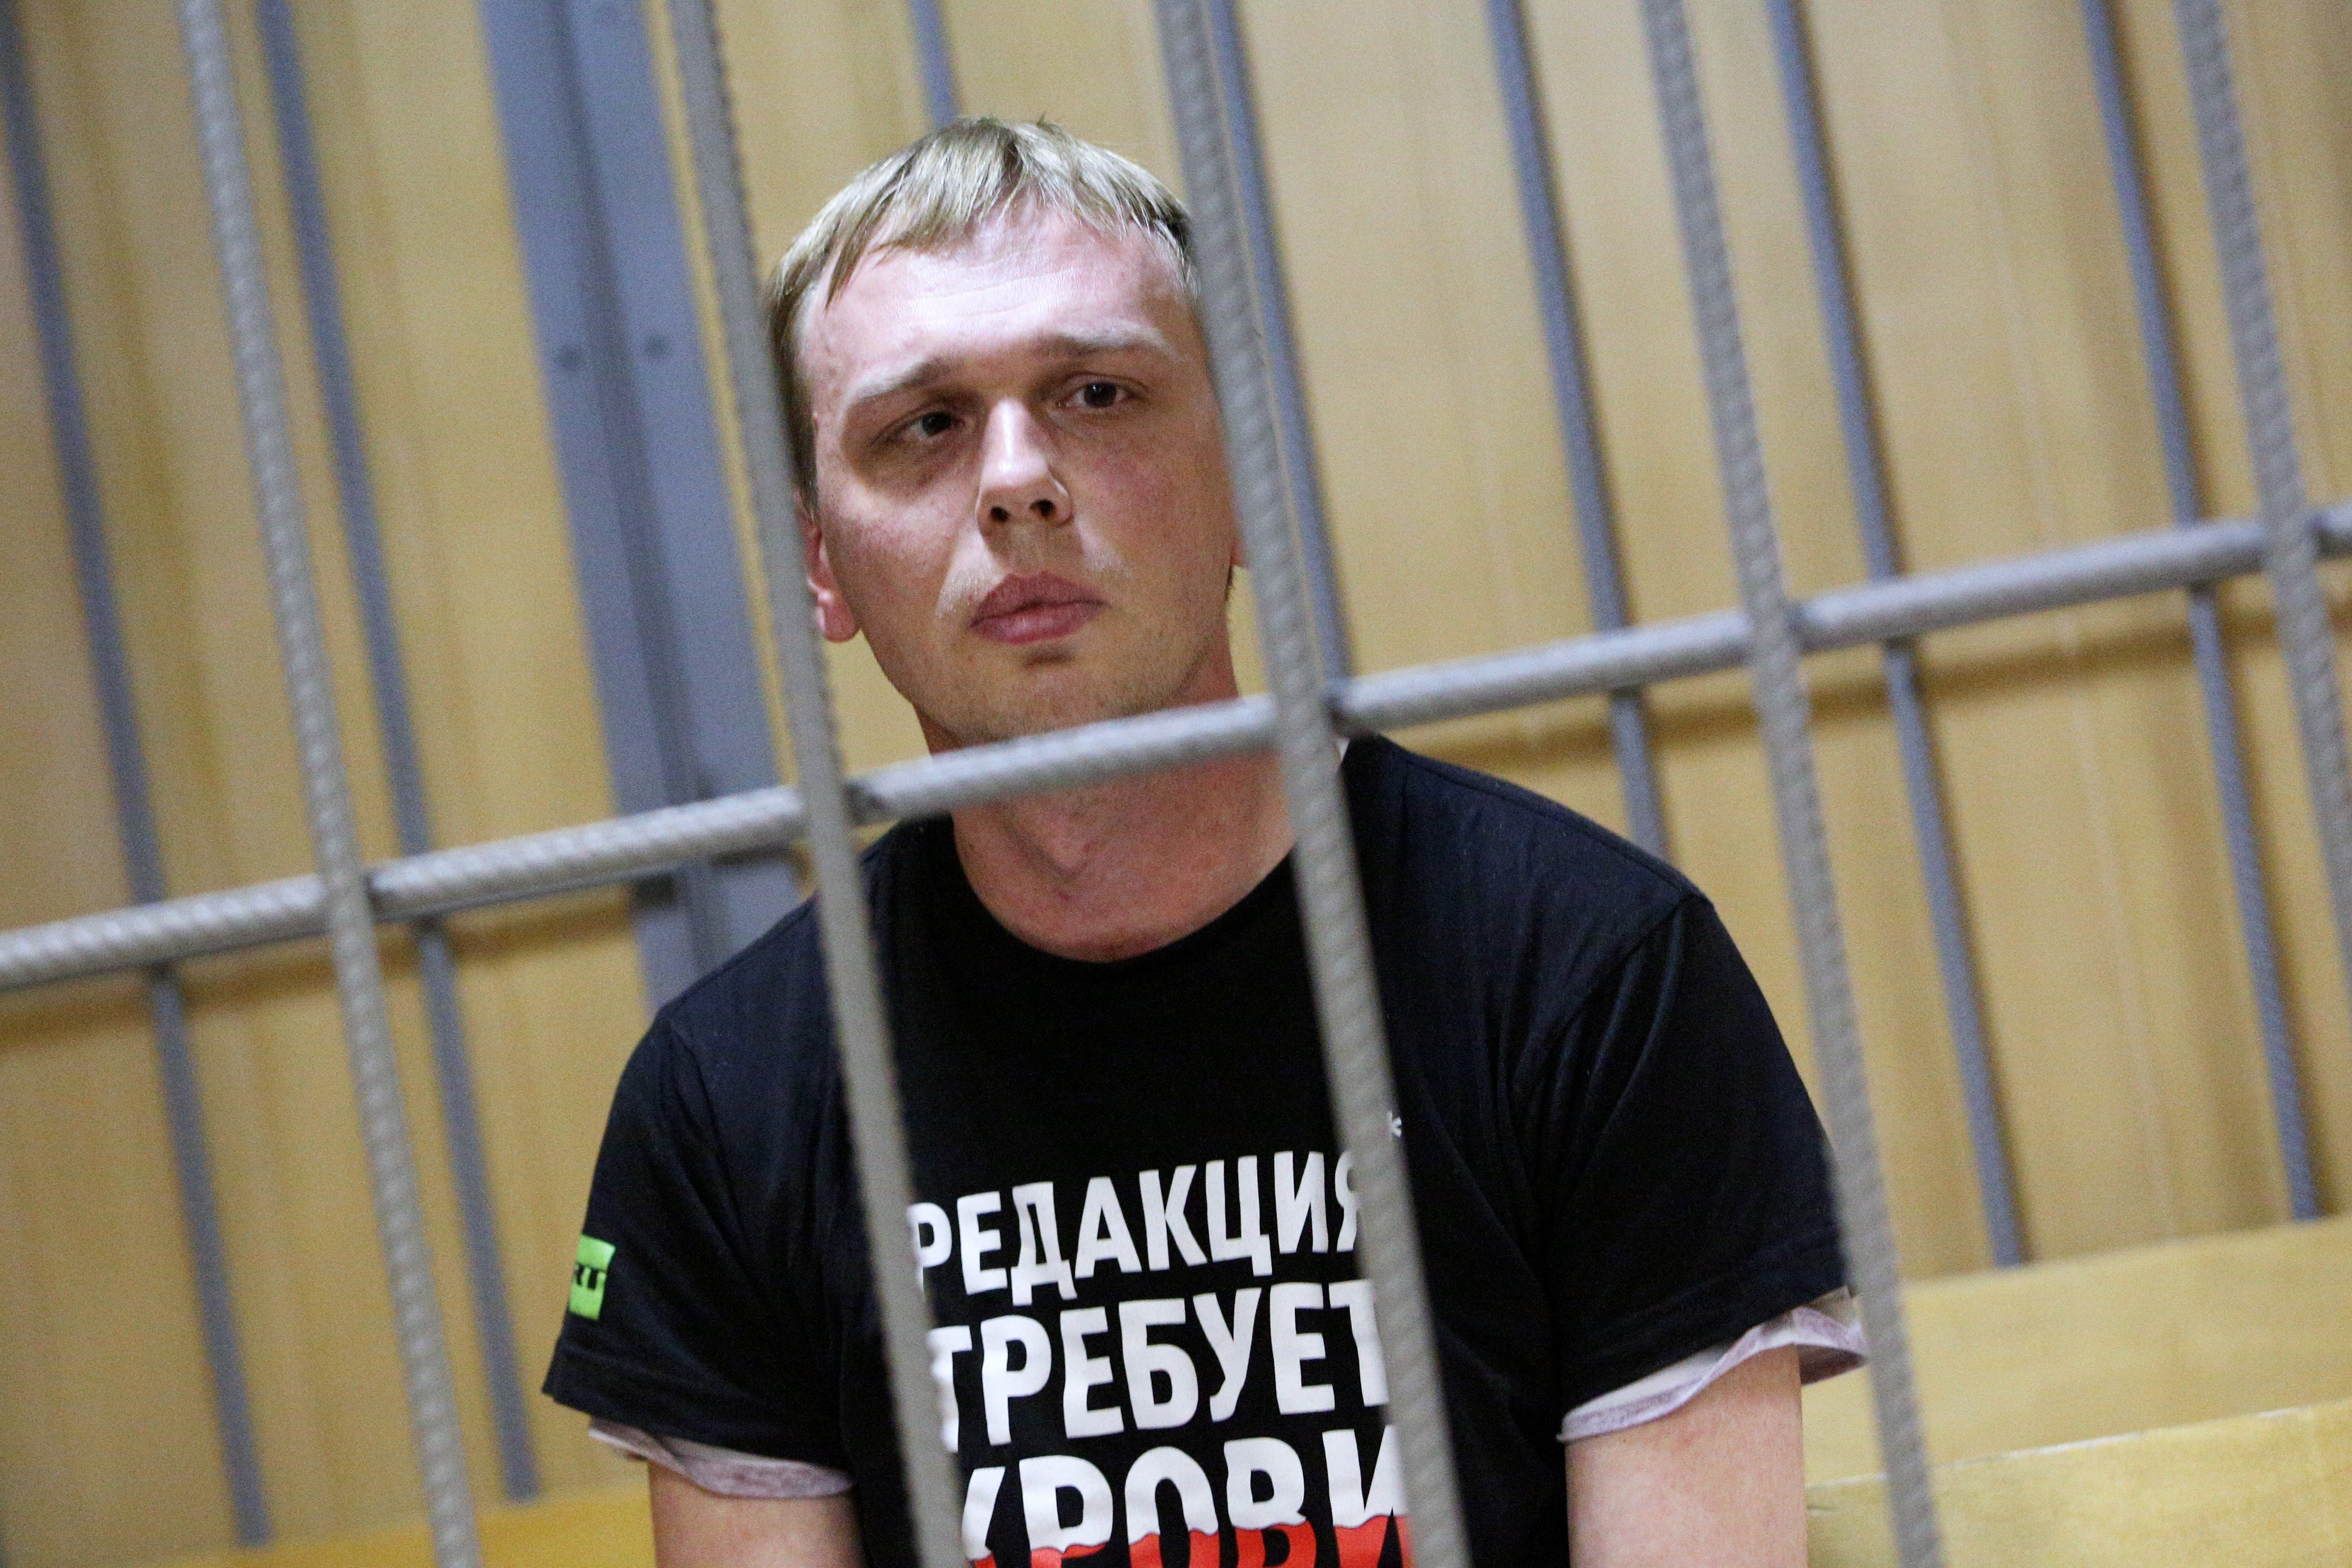 Журналист заявил, что правоохранителям просто стоило связаться с ним напрямую Фото: © Global Look Press / City News Moskva